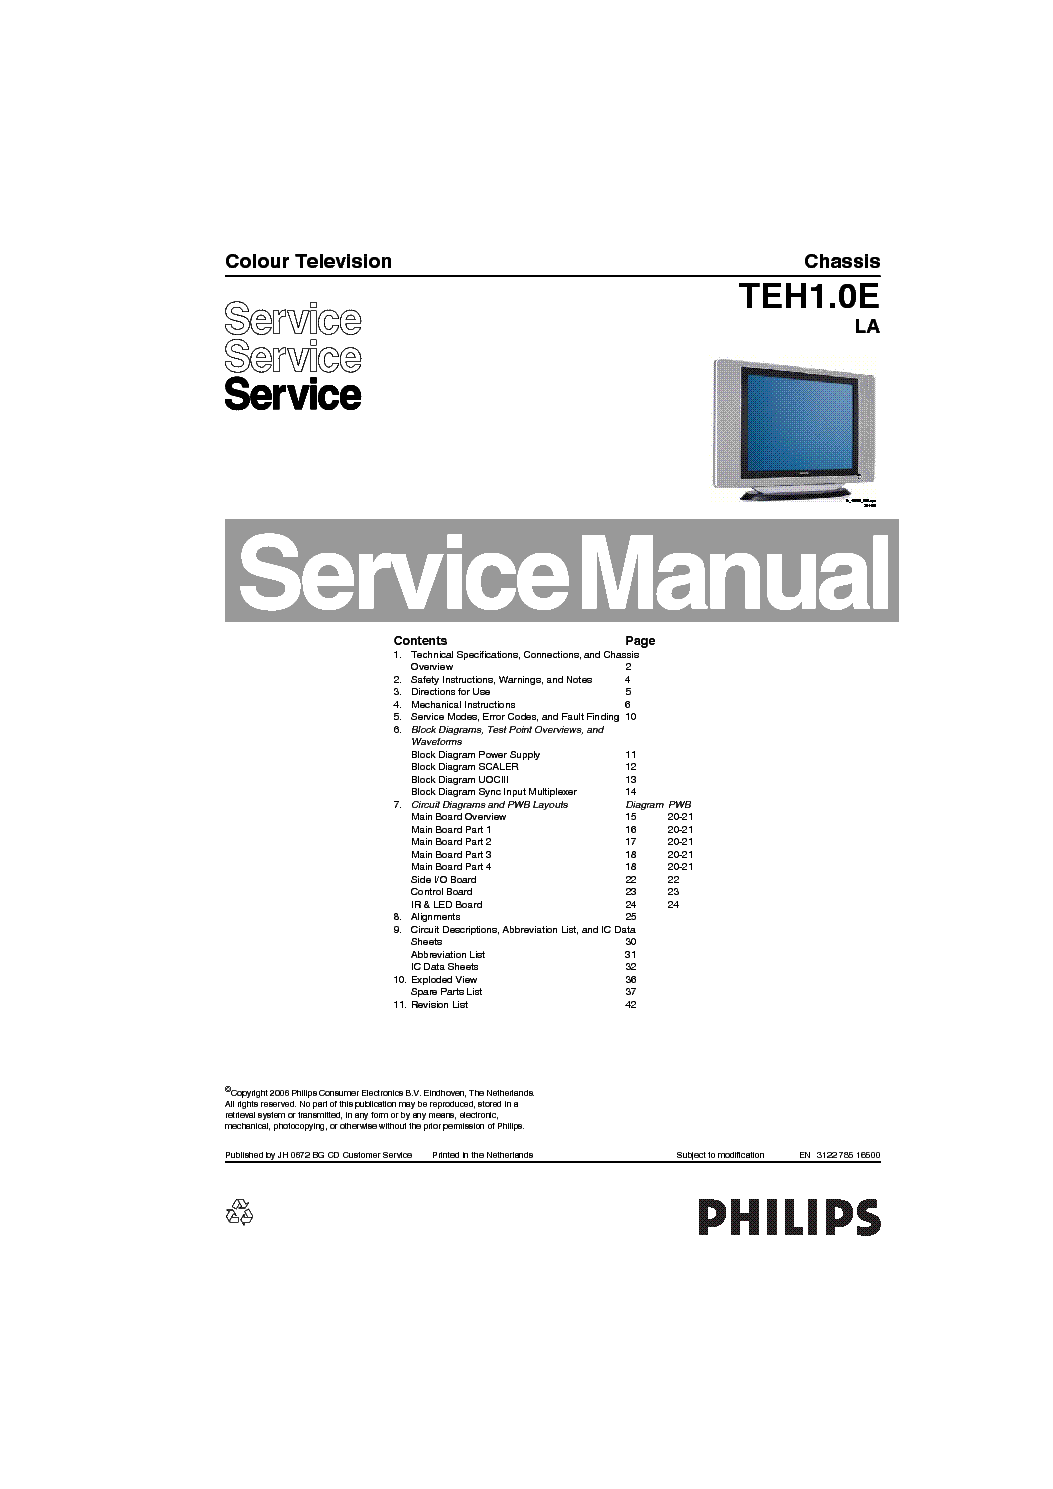 Service manual philips. ADC ошибка Филипс.